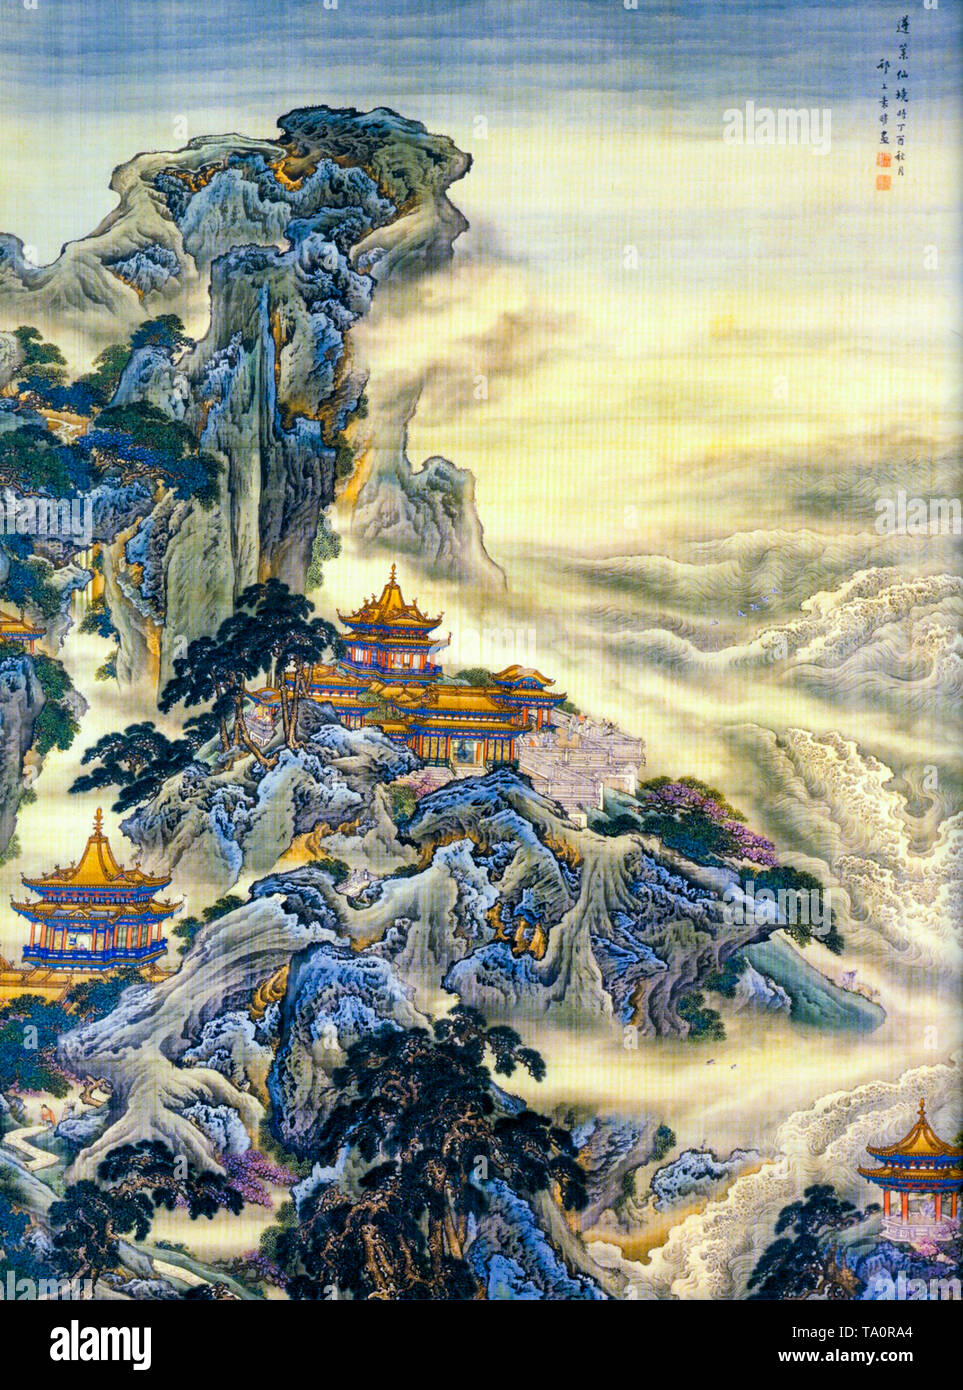 Le mont Penglai, chinois, l'île mythique de la peinture de paysage, Yuan Yao, 18e siècle Banque D'Images